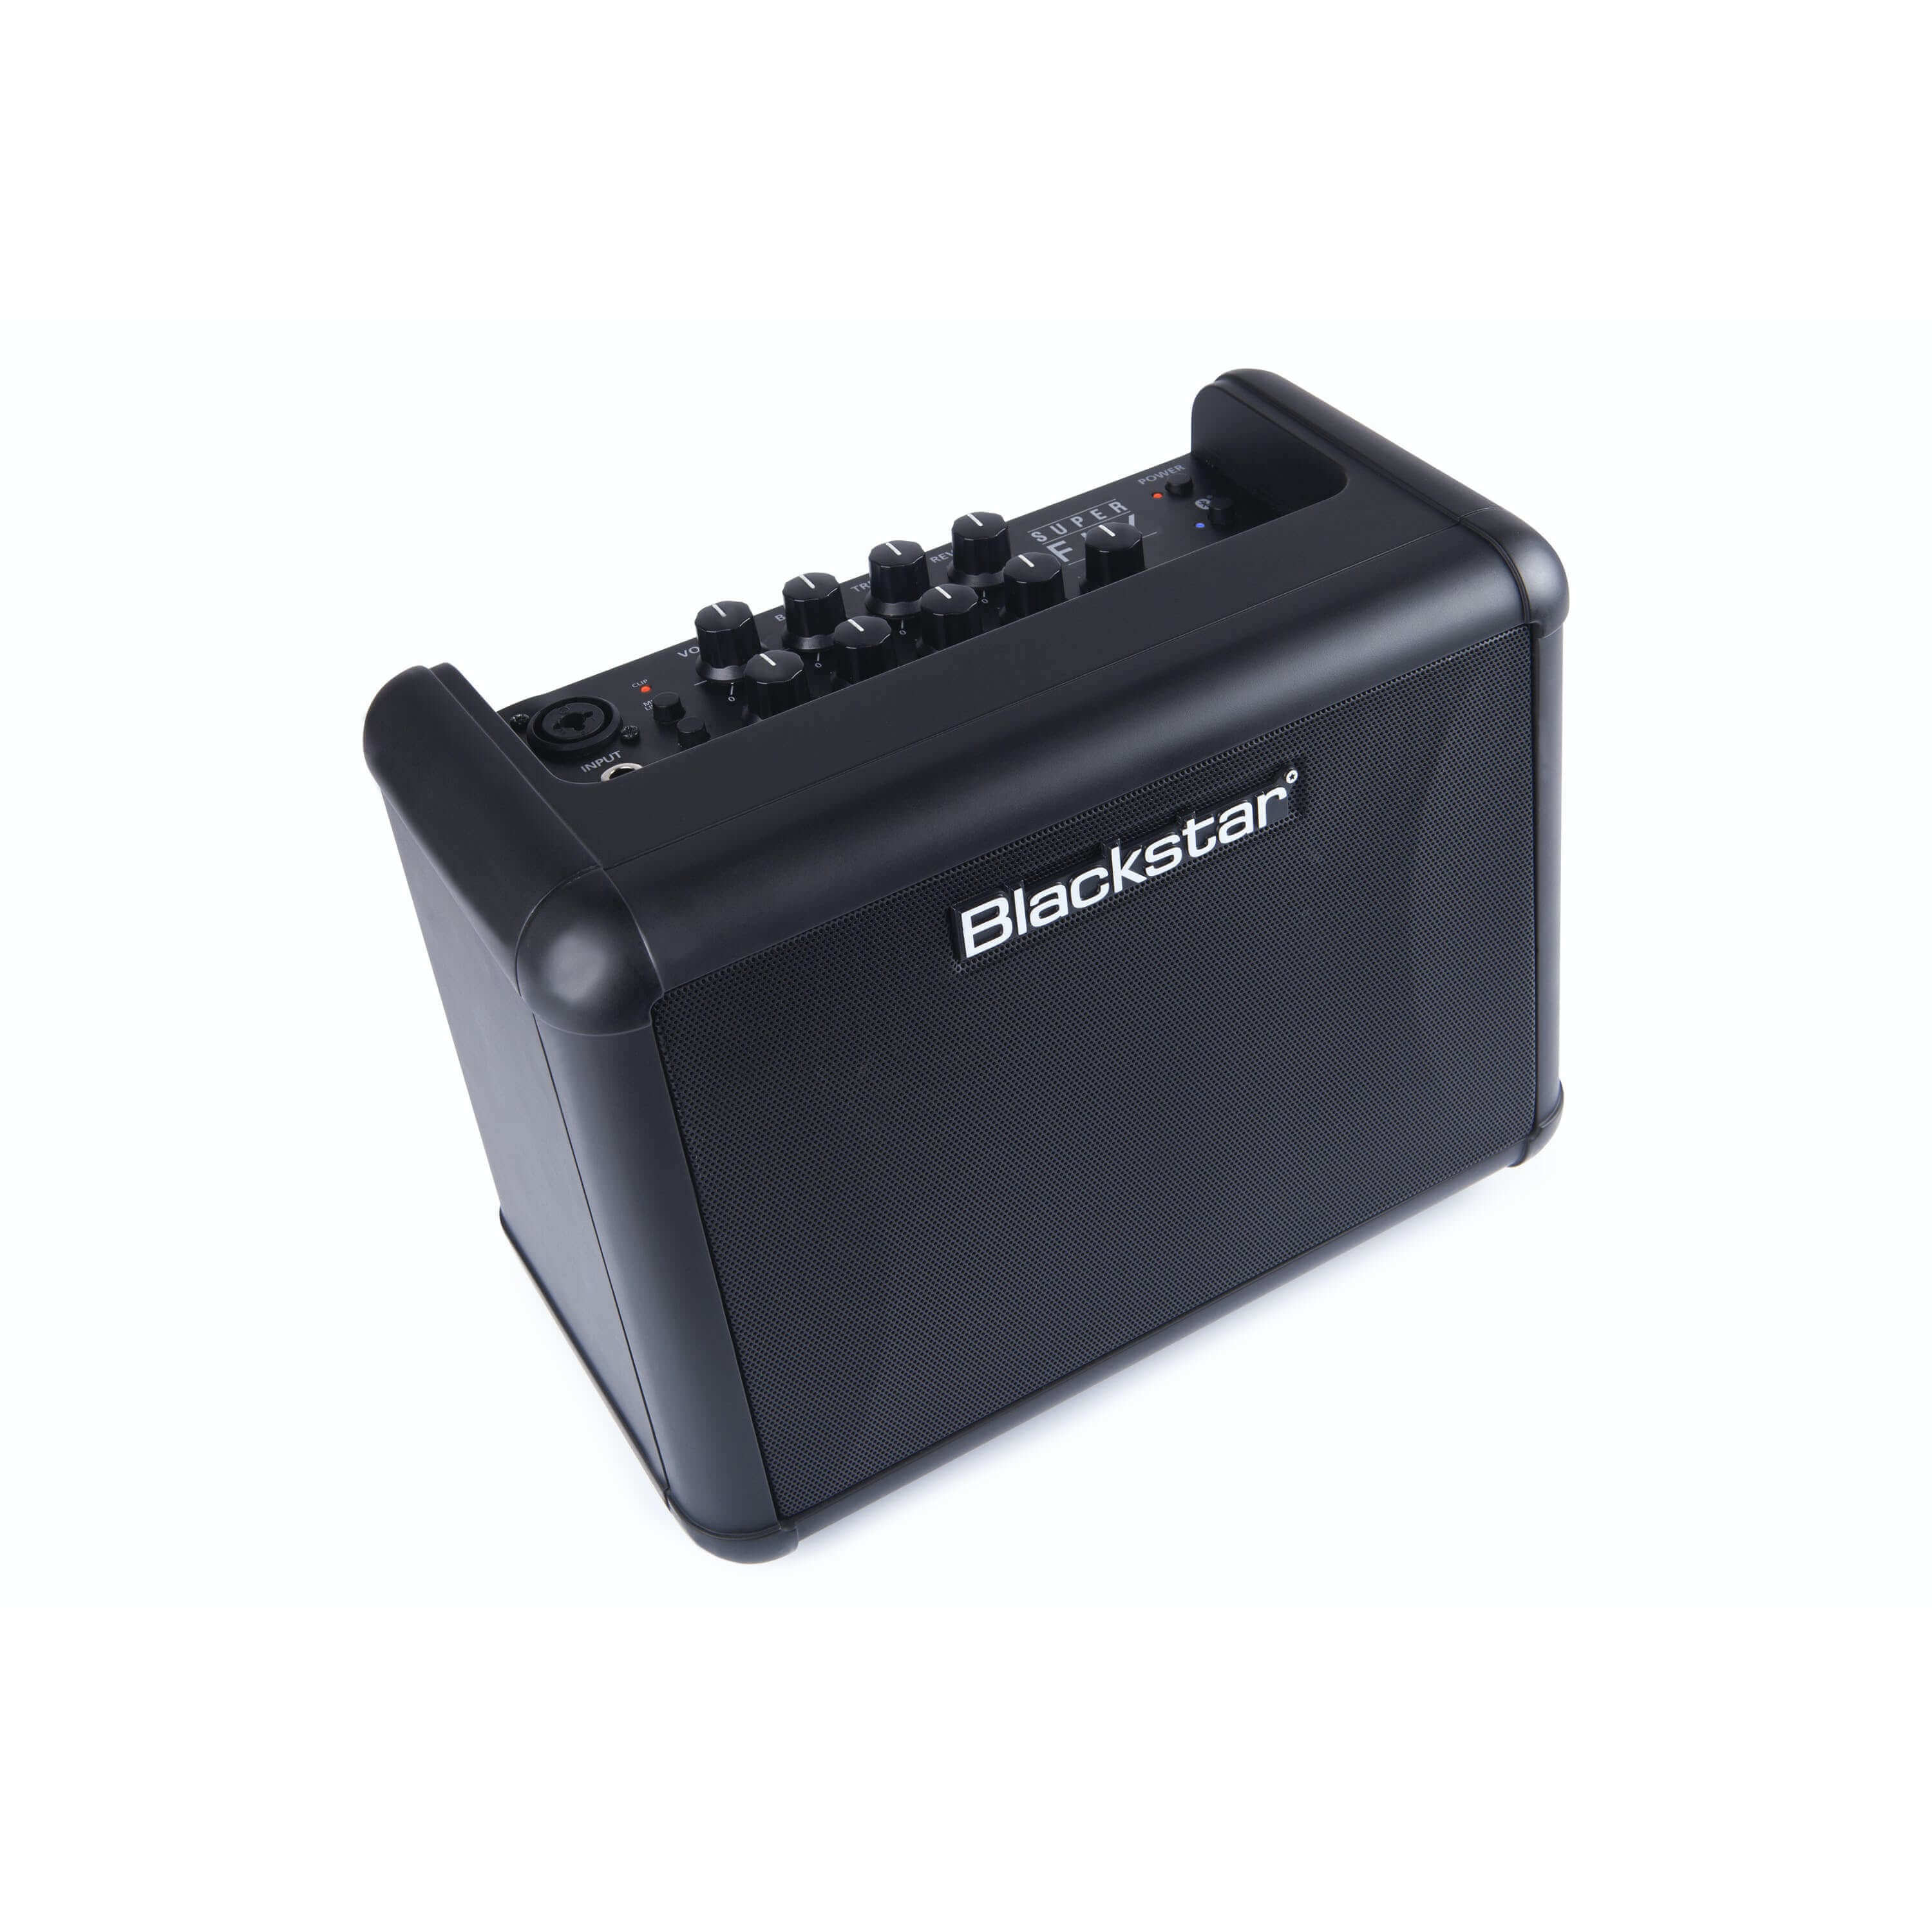 Blackstar Amplifier Blackstar - Super Fly Bluetooth